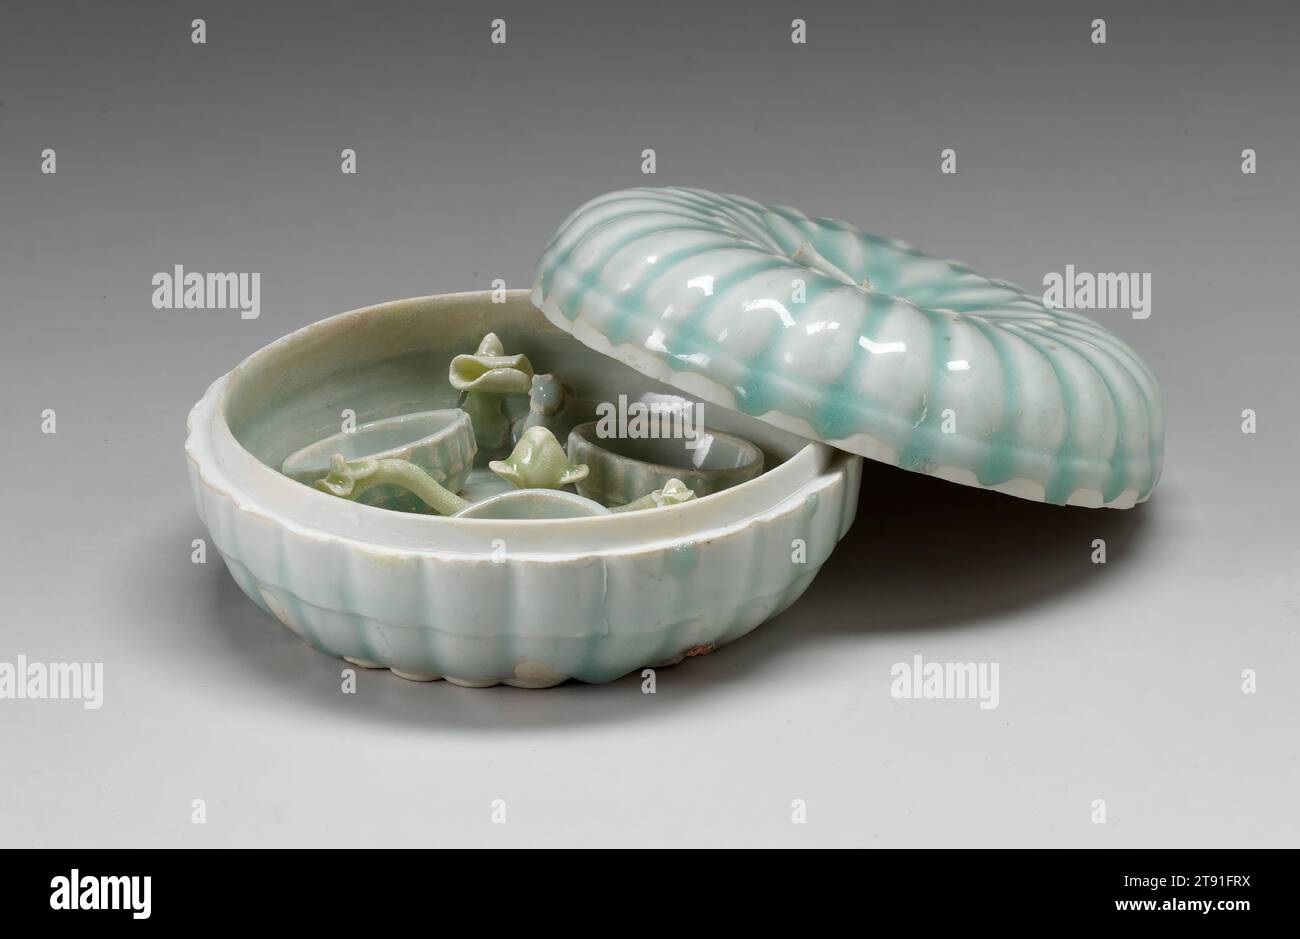 Boîte à cosmétiques Melon Form, 12e-13e siècle, atelier de la famille Tuan, chinois, 2 1/2 x 5 3/8 x 5 3/8 po. (6,35 x 13,65 x 13,65 cm) (total), porcelaine Qingbai avec glaçage bleu pâle, Chine, 12e-13e siècle, en forme de melon aplati, cette boîte à couvercle est placée à l'intérieur avec un grand bourgeon floral central à partir duquel sortent trois branches chacune avec des feuilles et des bourgeons à fourrure entrecoupés de trois petits récipients arrondis vraisemblablement pour les cosmétiques. De telles boîtes, ainsi que des boîtes à encre scellée et à couvercle multifonctionnel, ont été produites en grande quantité dans les fours Yingqing Banque D'Images